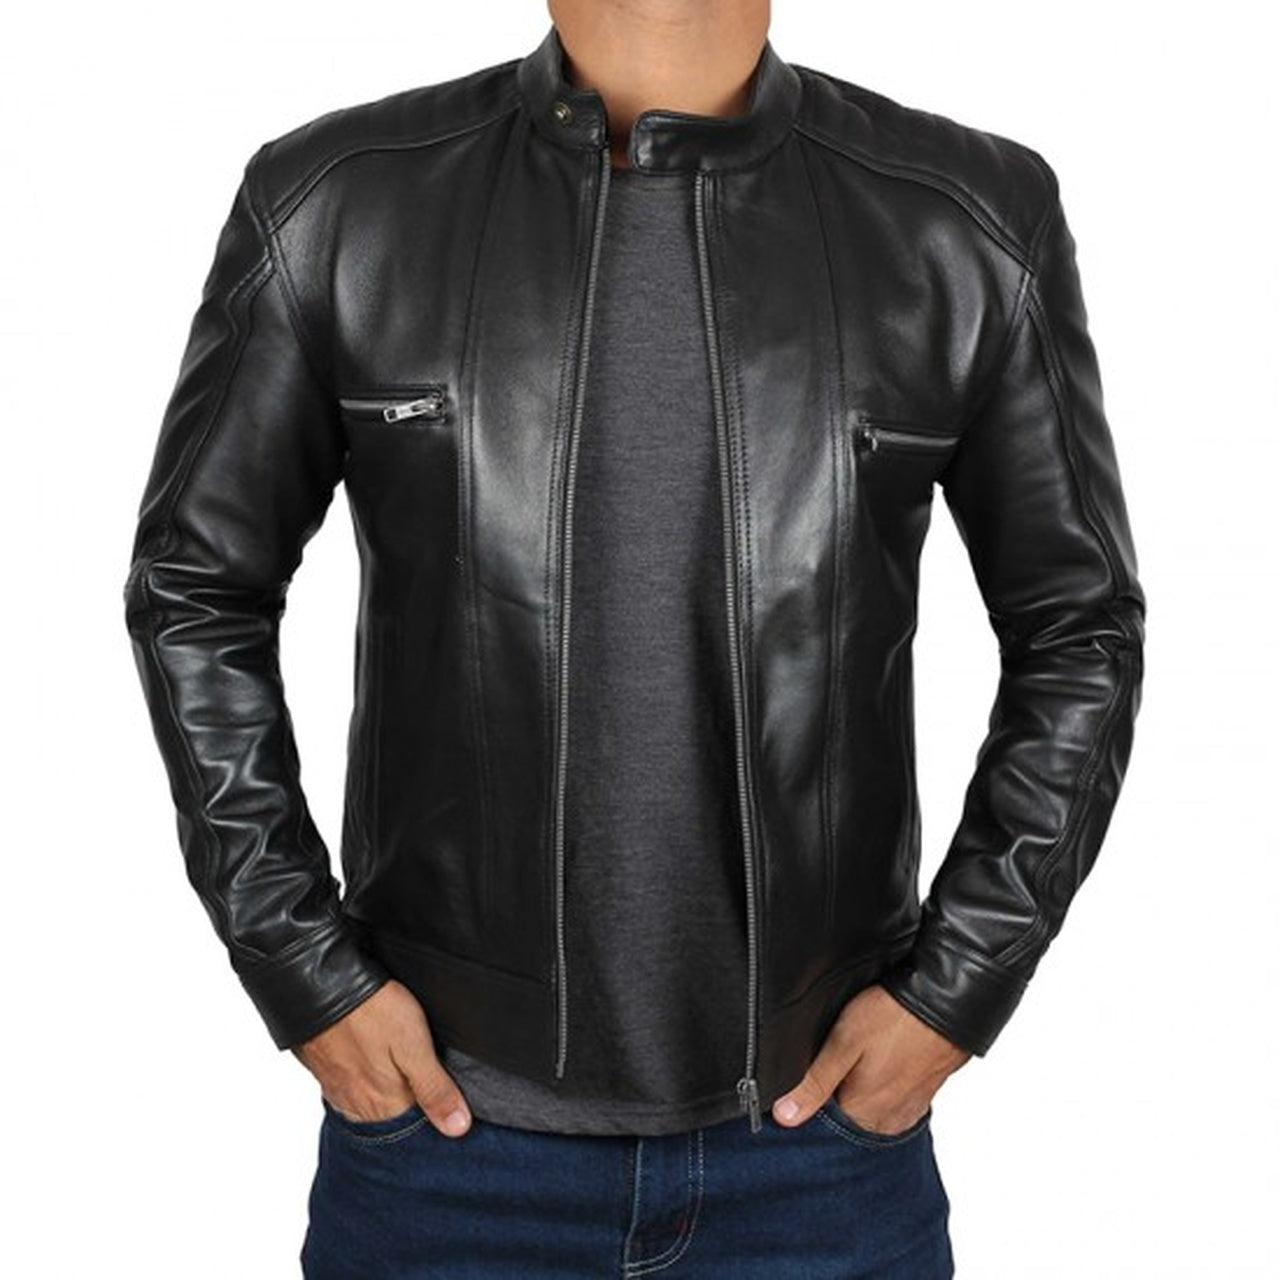 Black Leather Cafe Racer Jacket For Men